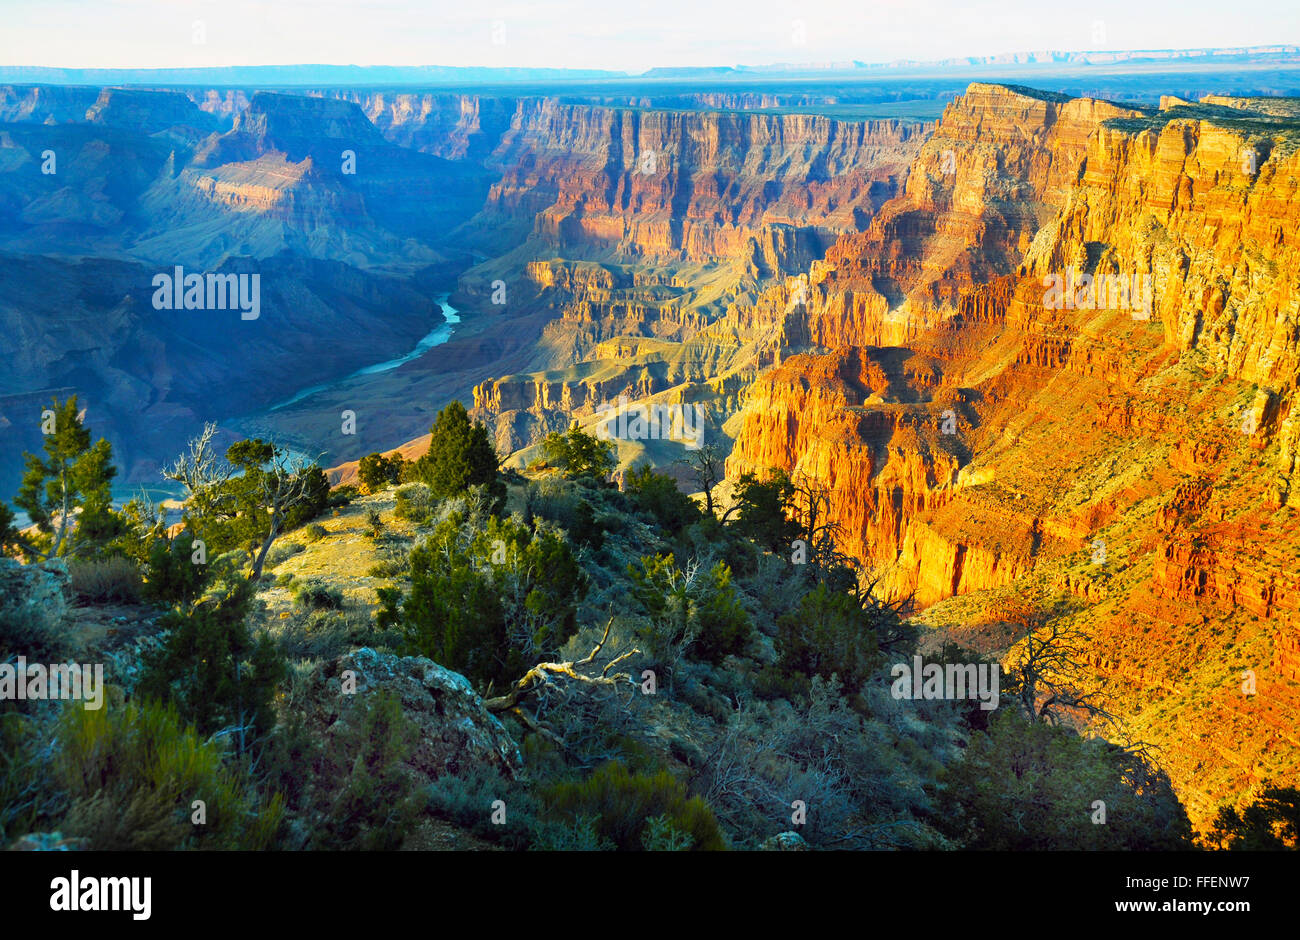 Grand Canyon est un canon à parois abruptes creusées par la rivière Colorado Arizona. Les Indiens se sont installés région géologique. Banque D'Images